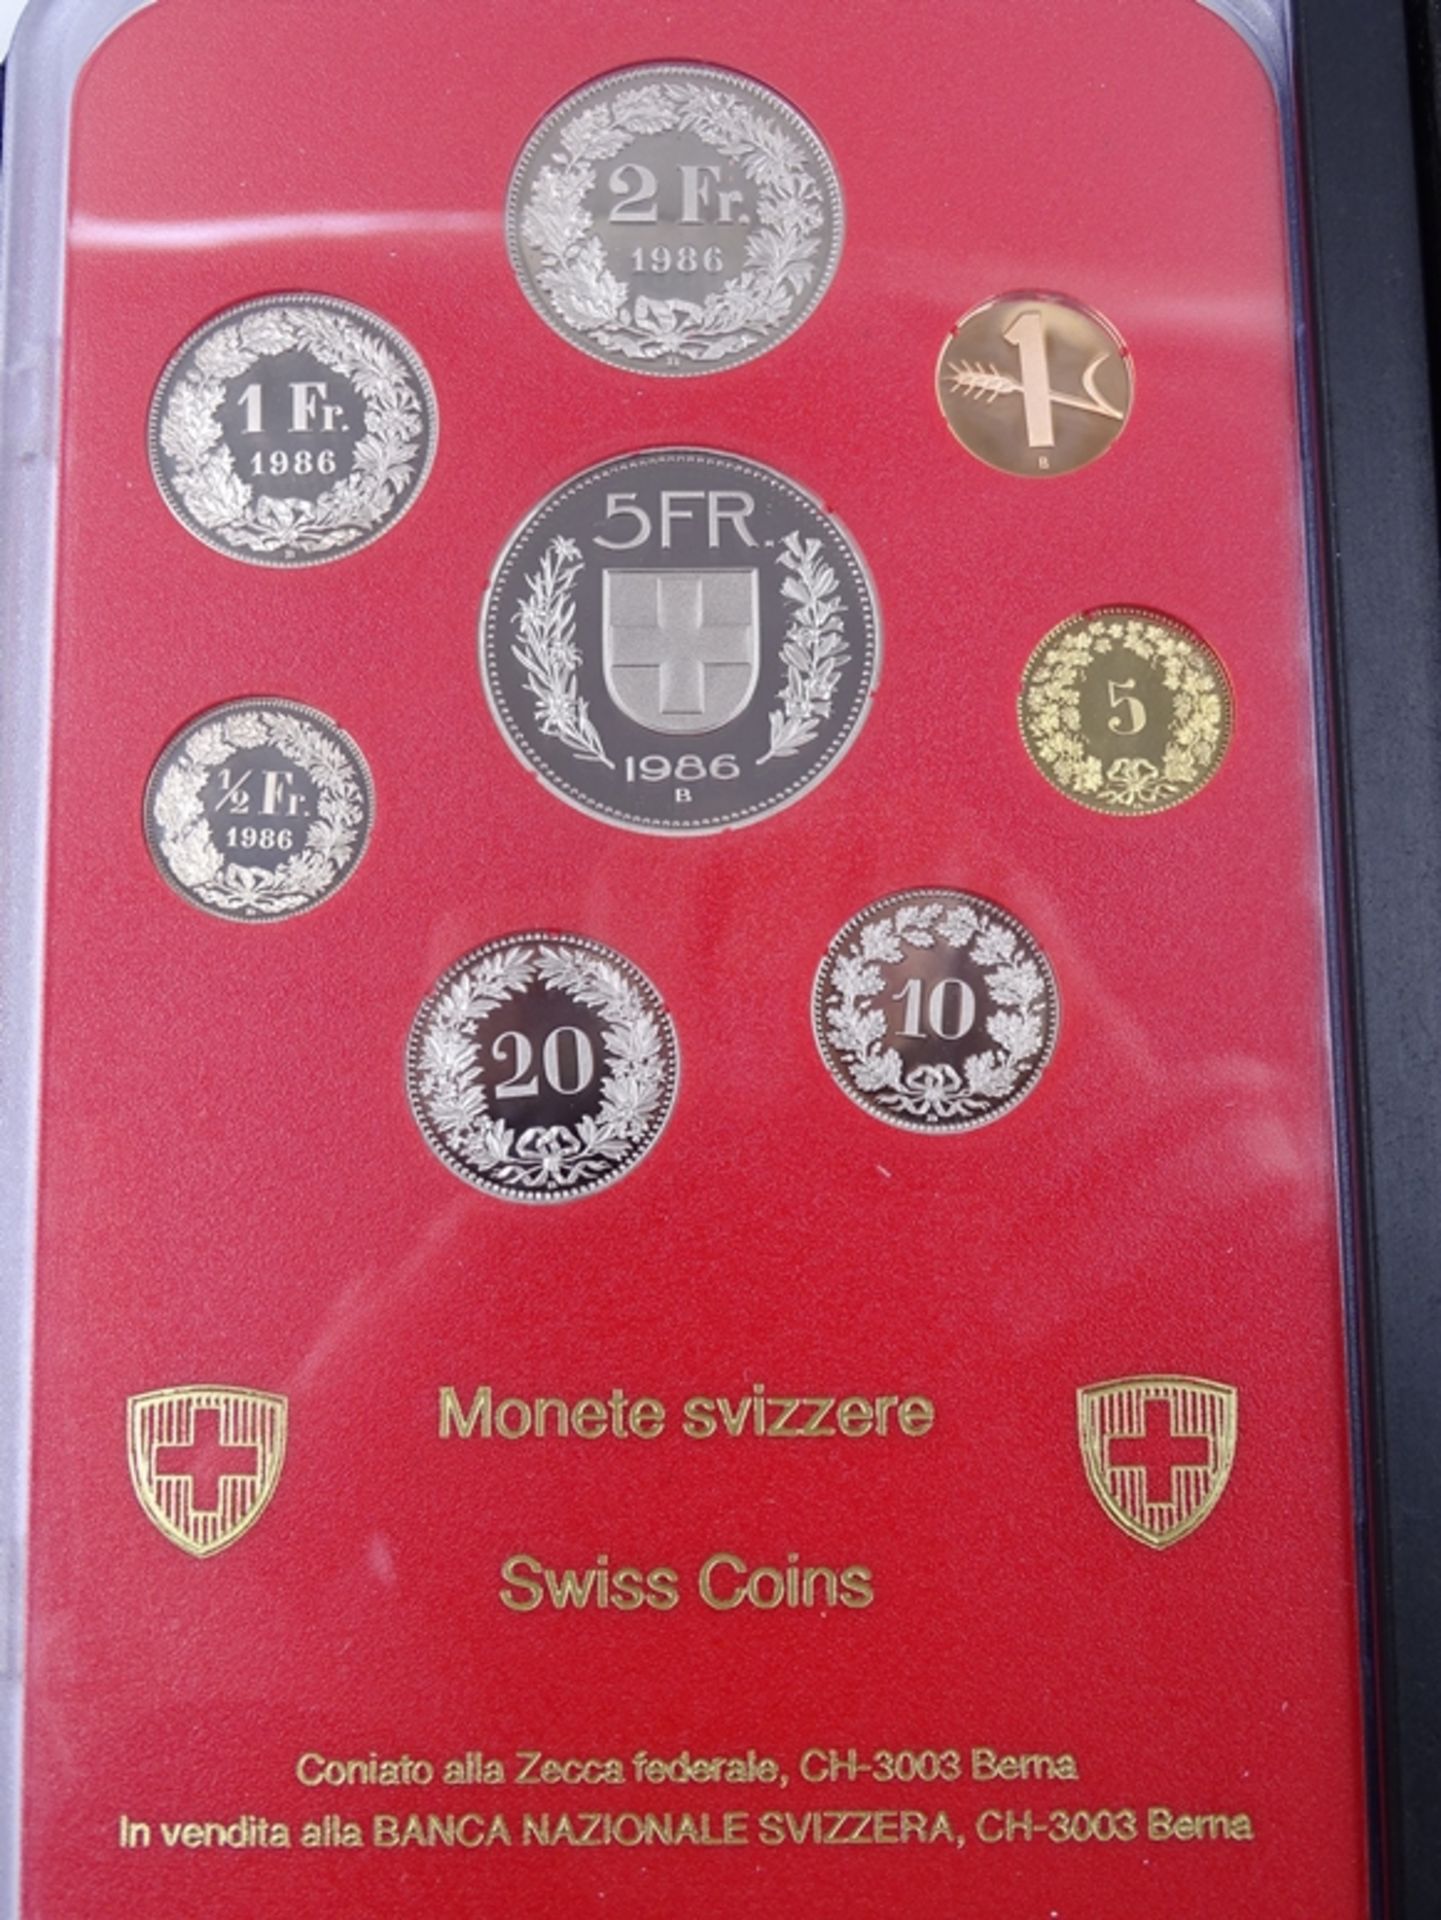 Münzsatz Schweizer Franken 1986, 8,86 CHF, mit Schatulle, Umschlag und Schuber - Image 5 of 6